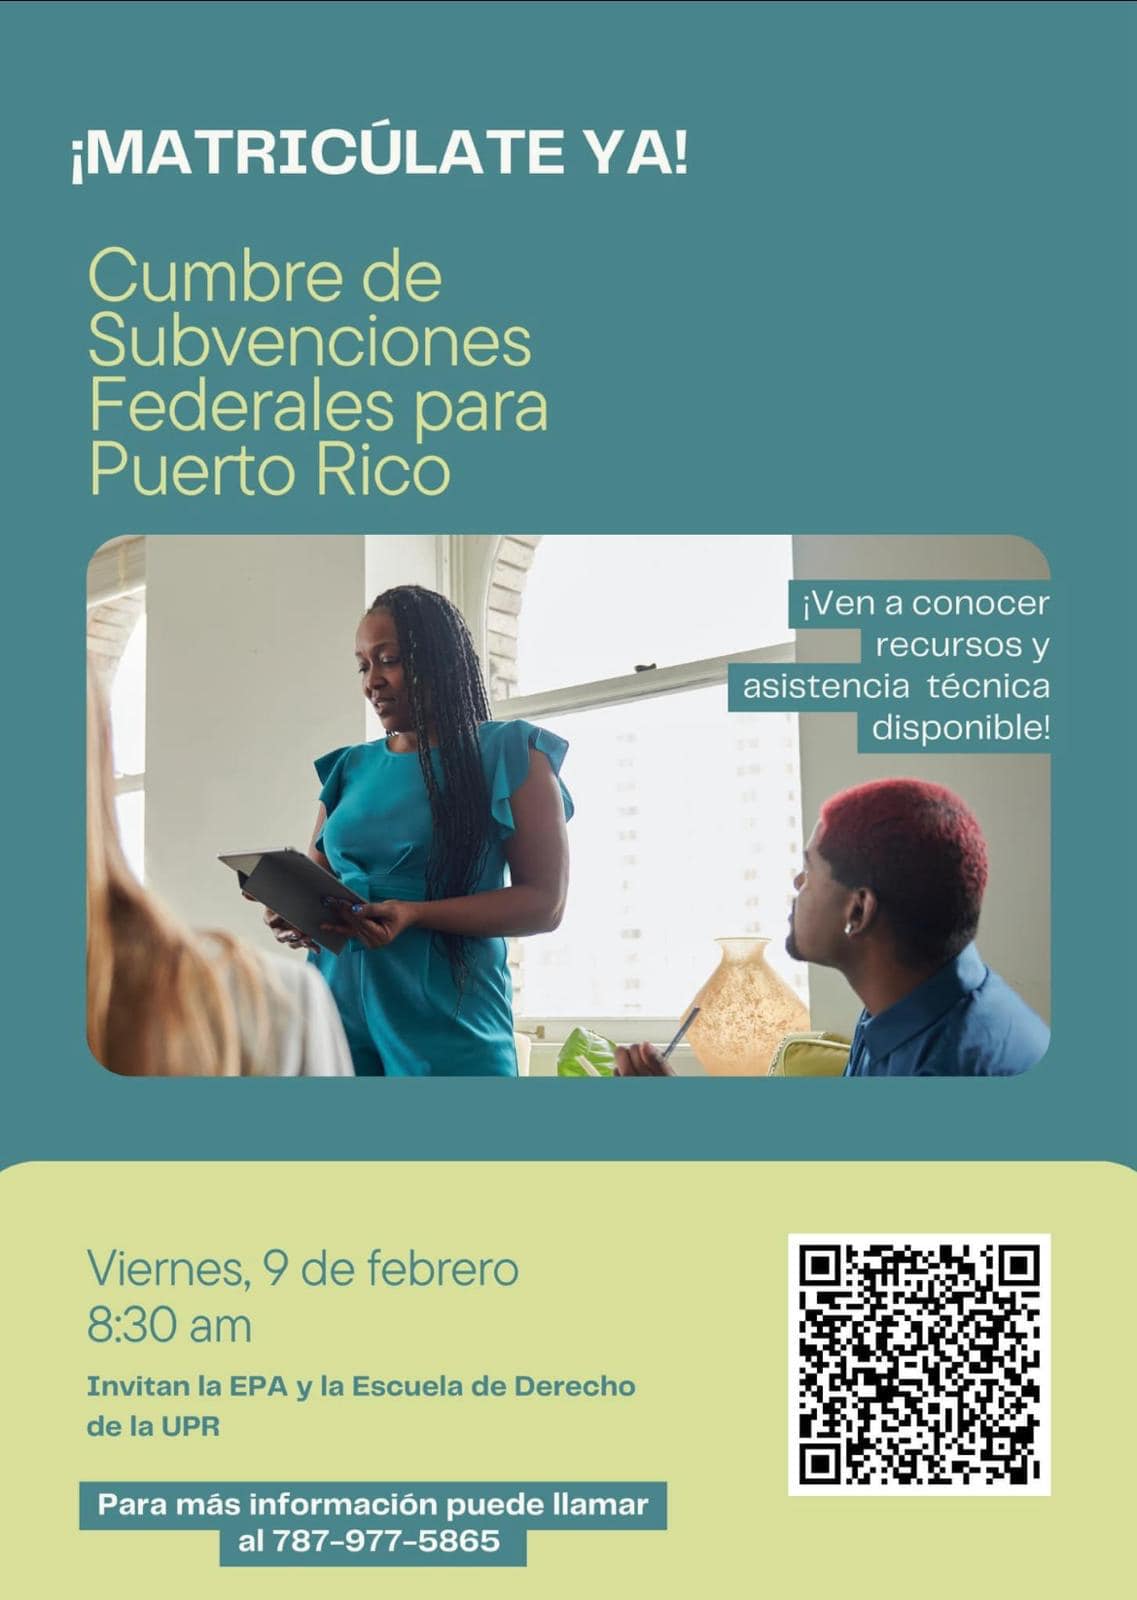 Se invita a la Cumbre de Subvenciones Federales para Puerto Rico el viernes, 9 de febrero a las 8:30 AM en la Escuela de Derecho UPR.